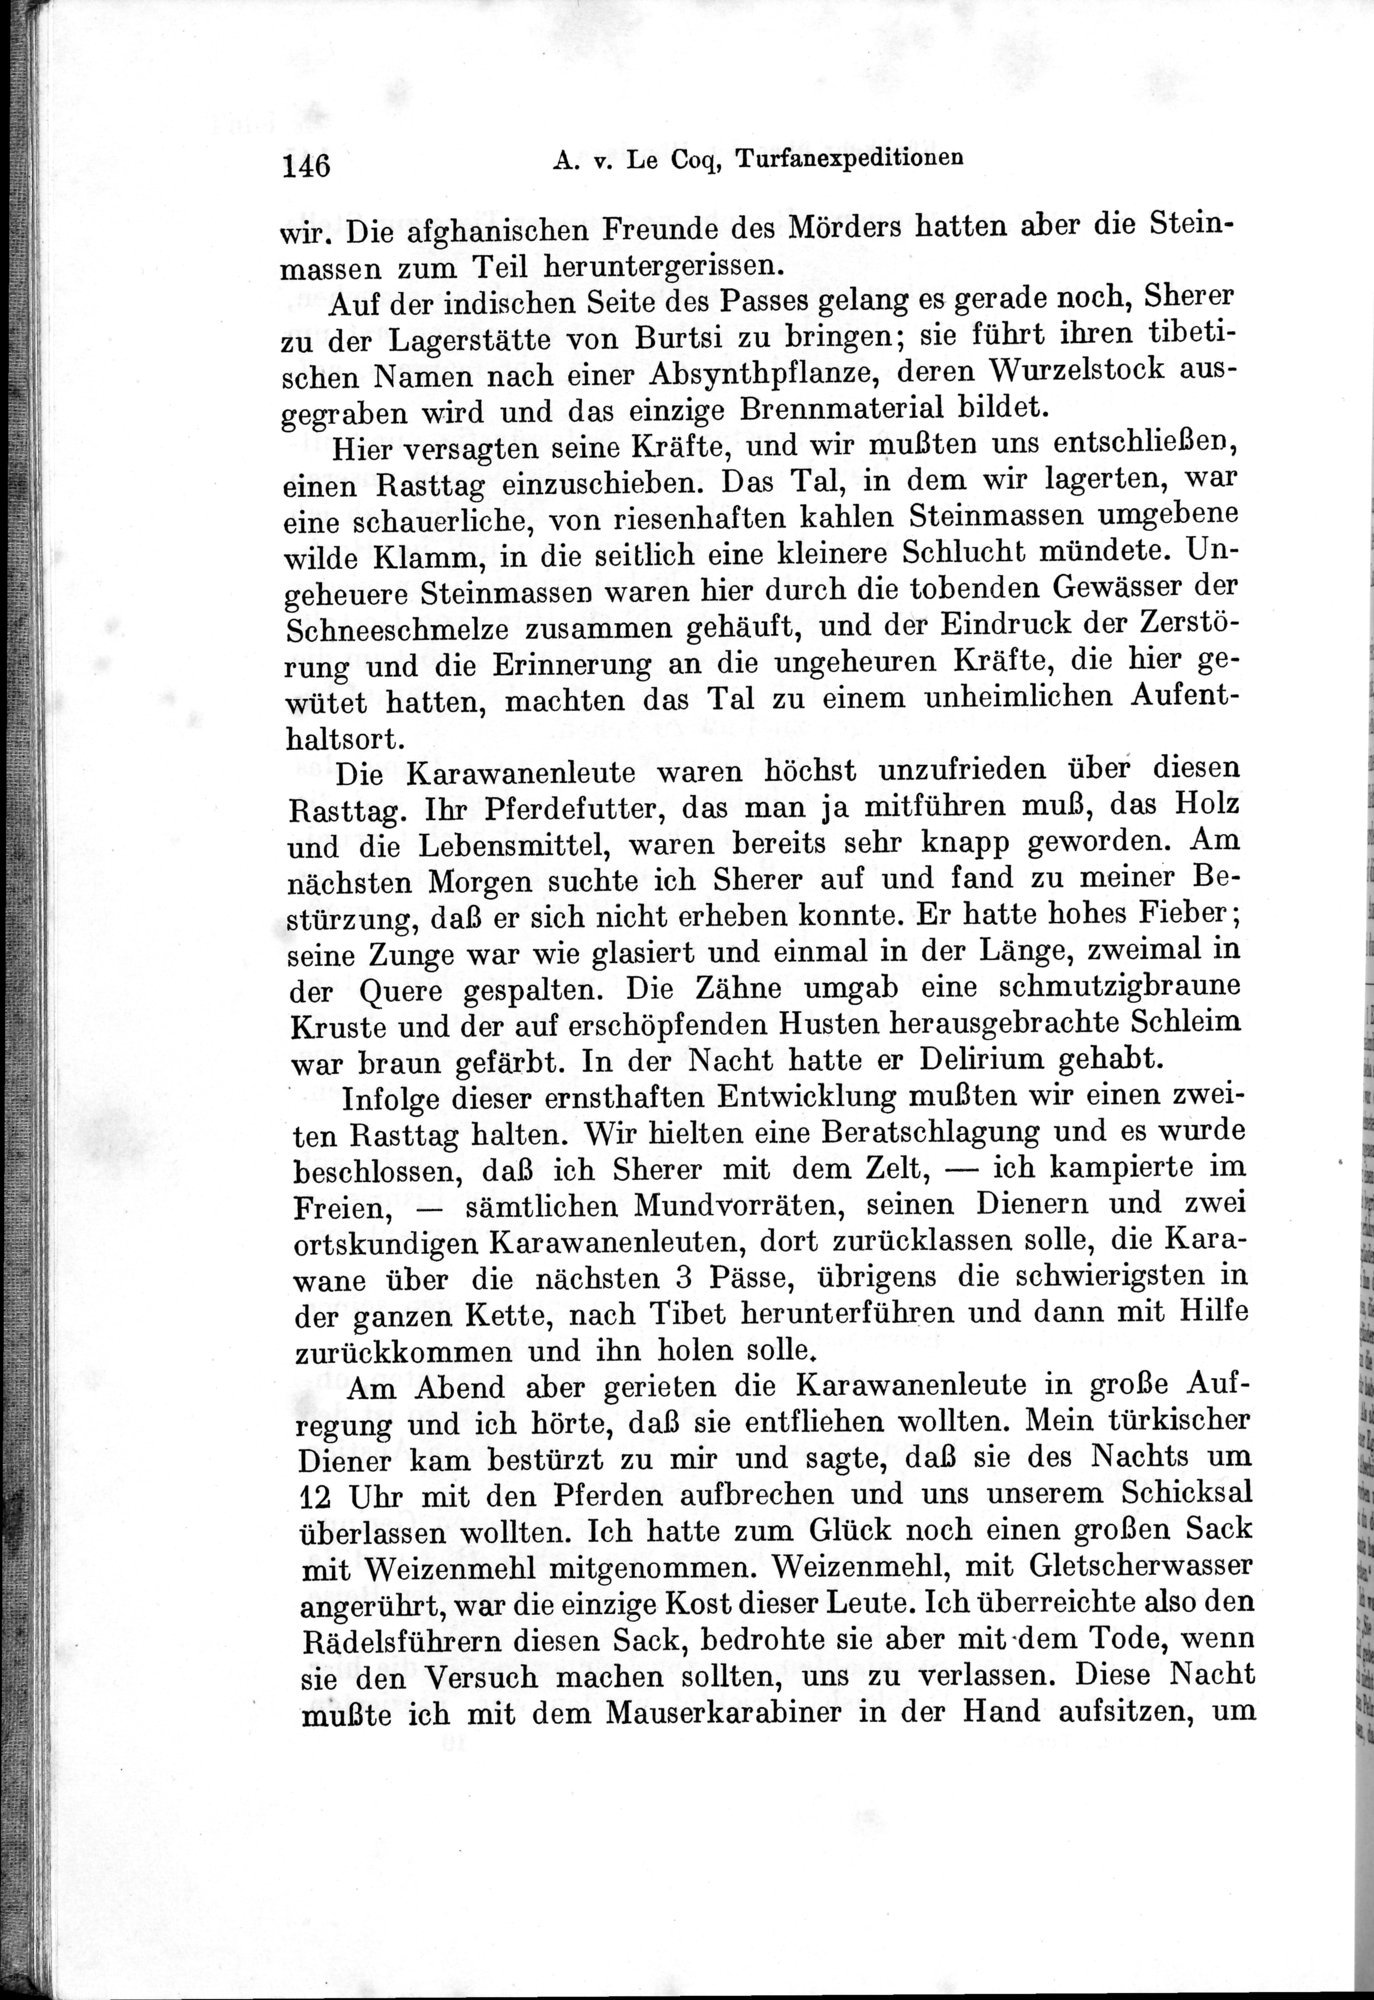 Auf Hellas Spuren in Ostturkistan : vol.1 / Page 210 (Grayscale High Resolution Image)